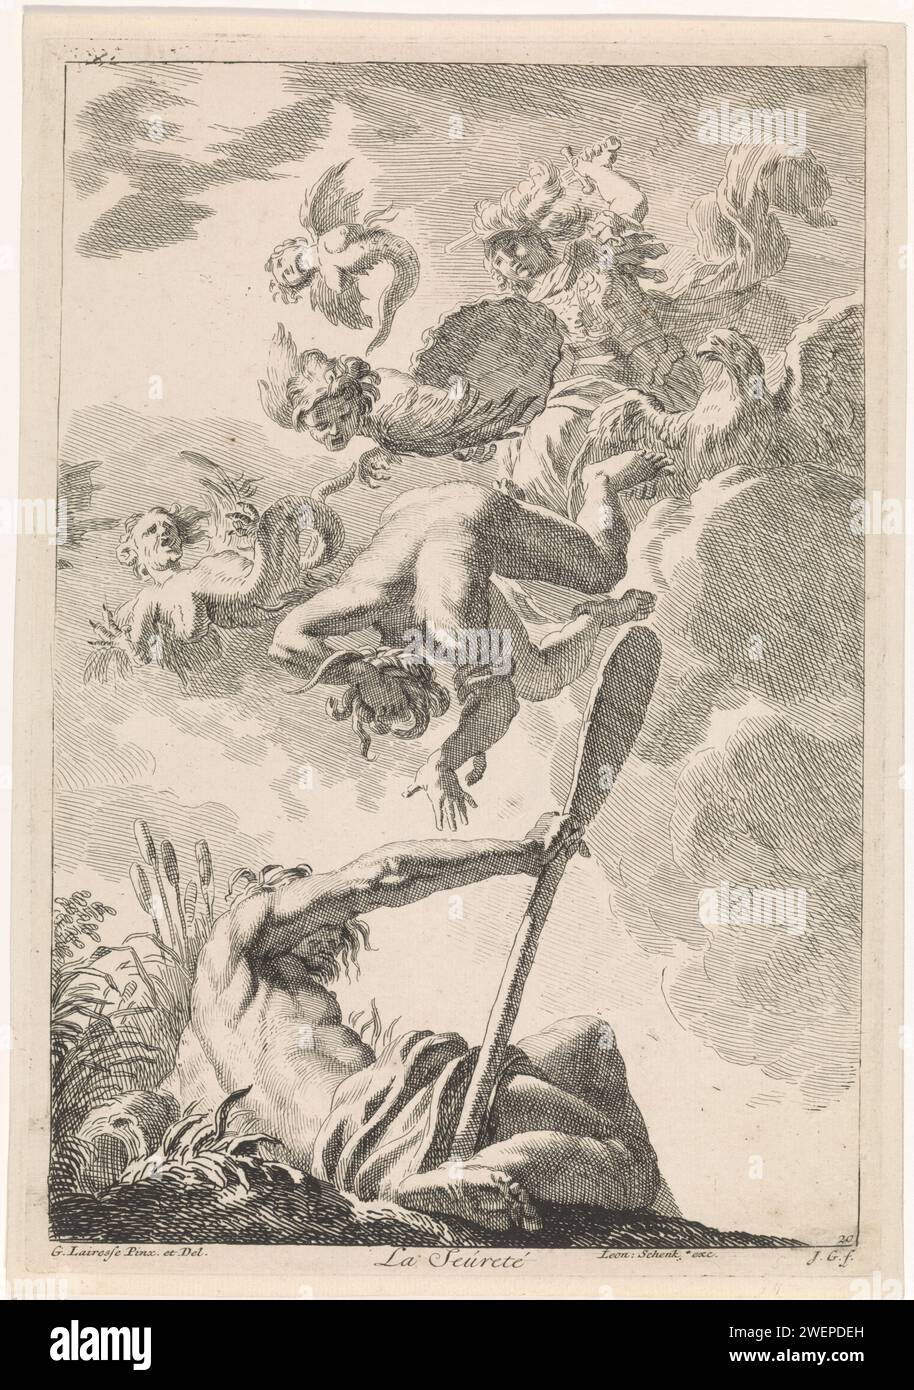 Minerva déplace l'envie : une allégorie par certitude, Johannes glaber, d'après Gerard de Lairesse, 1672 - 1726 imprimer la déesse Minerve déplace trois harpes et la personnification de l'envie du ciel. Au premier plan la personnification de la rivière Amstel. L'estampe est une peinture de plafond de Gérard de Lairesse et fait partie d'une série avec des représentations bibliques, mythologiques et allégoriques. Gravure sur papier (histoire de) Minerva (Pallas, Athéna). Envie ; 'Invidia' (Ripa)  personnification de l'un des sept péchés capitaux. rivière personnifiée, 'Fiumi' (Ripa). Harpies (mythologie classique) Amstel (rivière) Banque D'Images